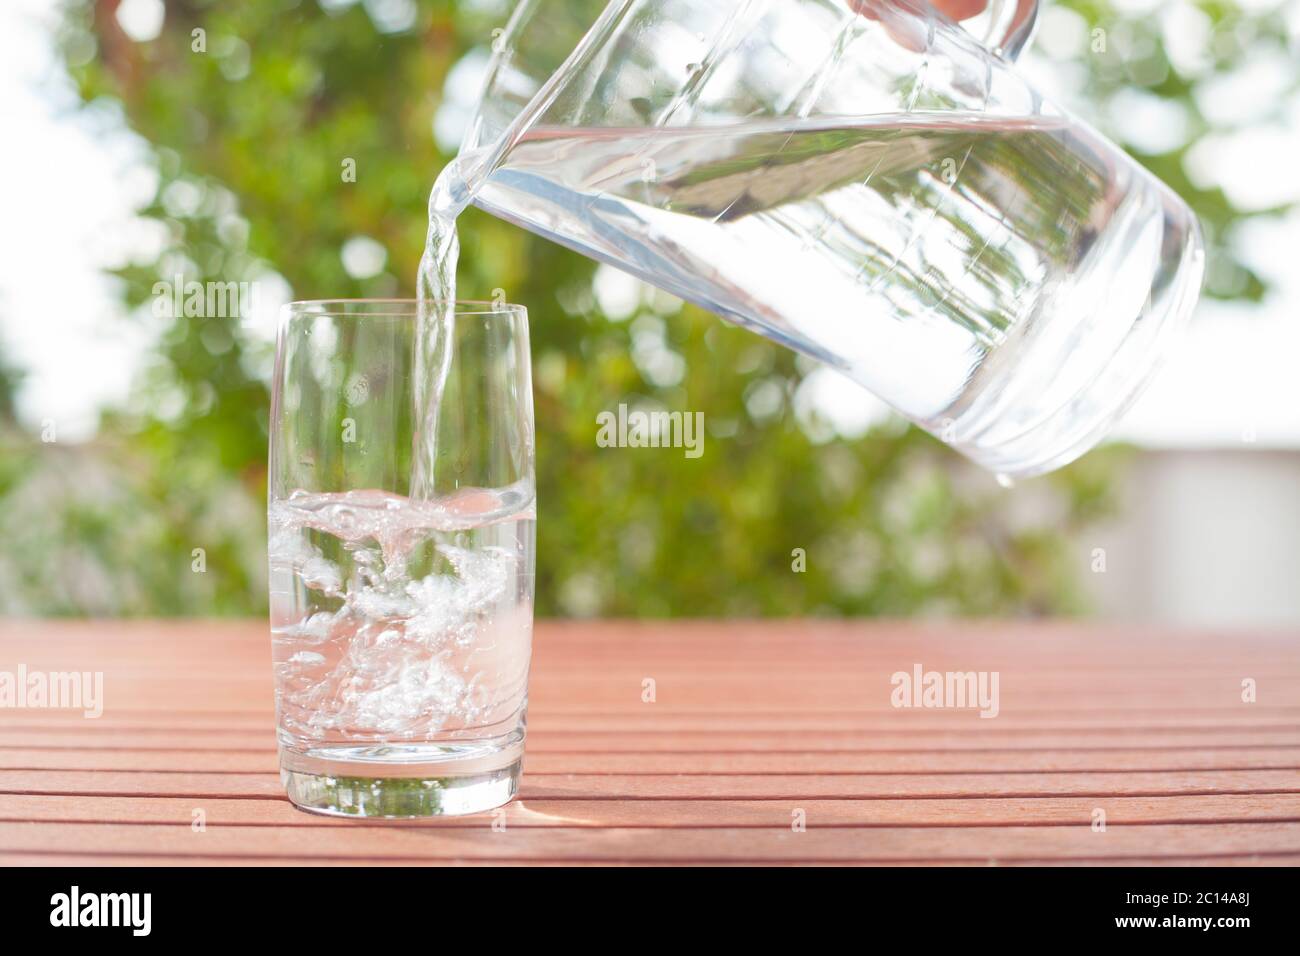 Agua potable que fluye de una jarra de cristal a un cristal, de fondo con plantas Foto de stock